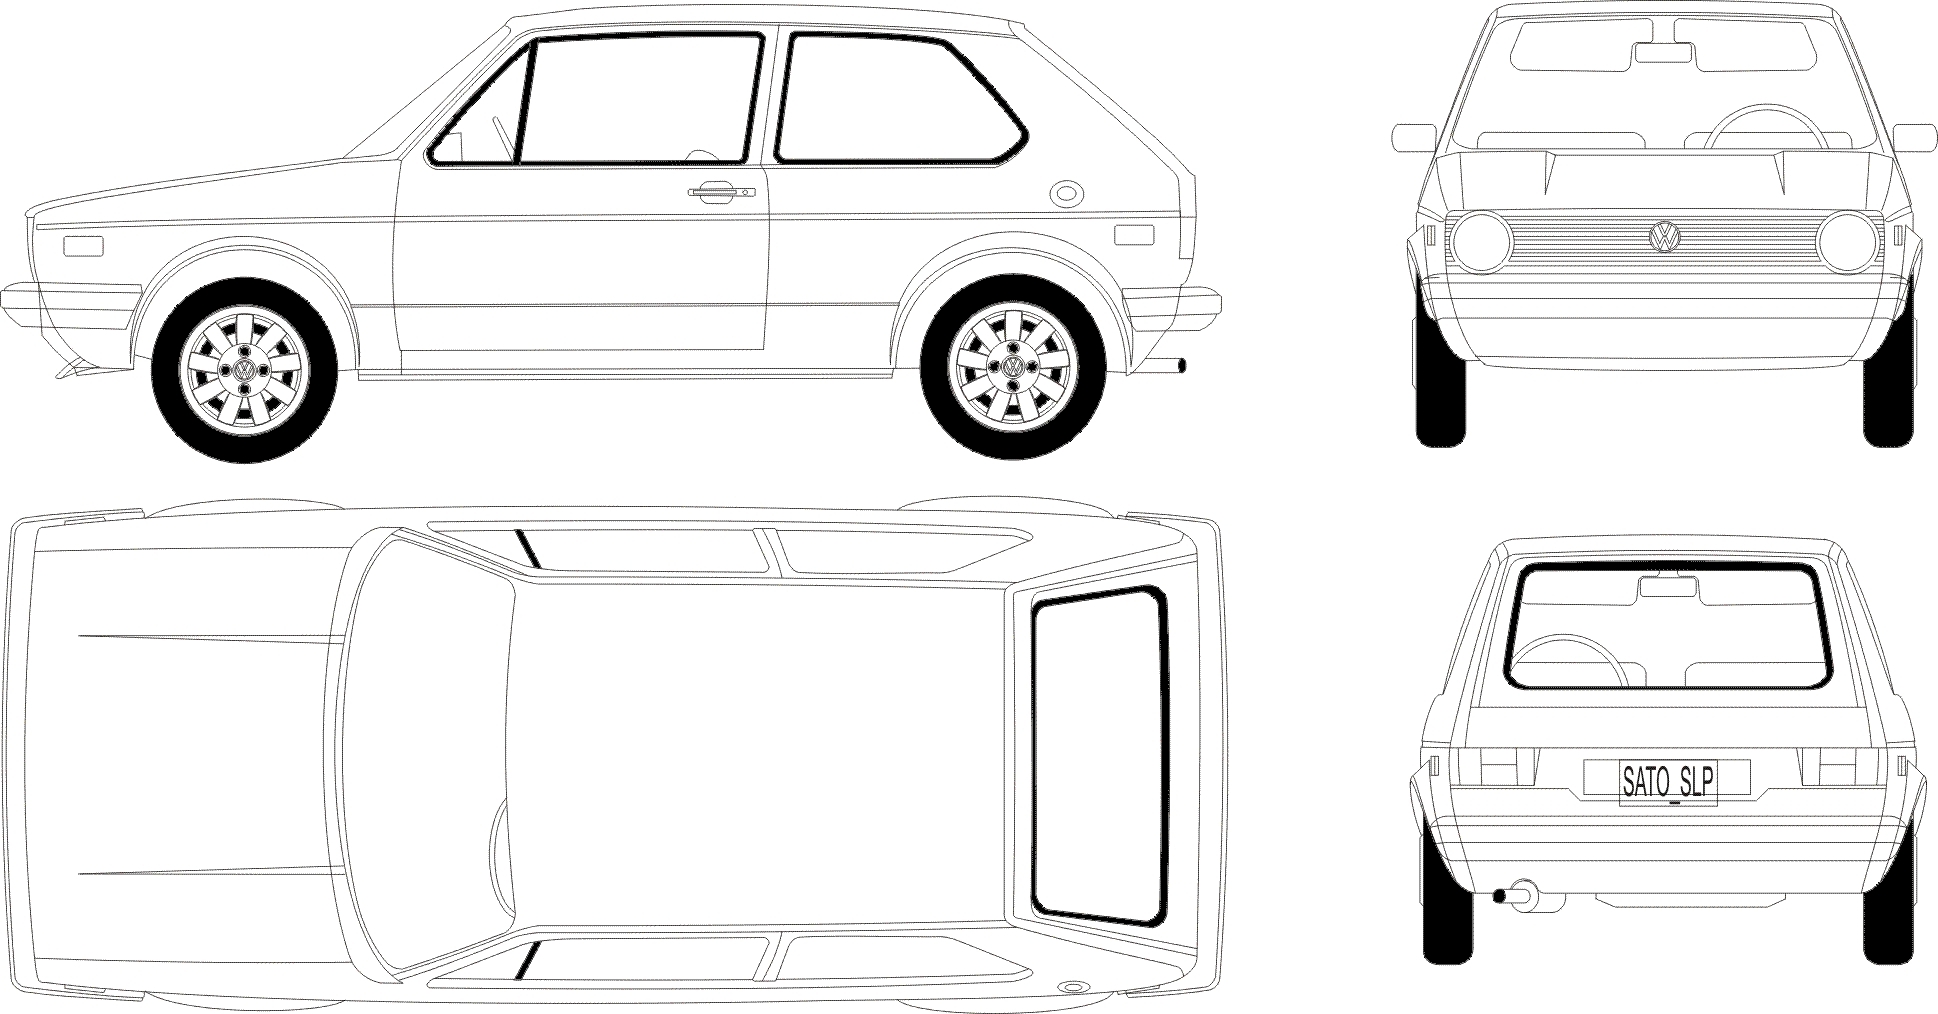 VW Golf 1 Blueprint